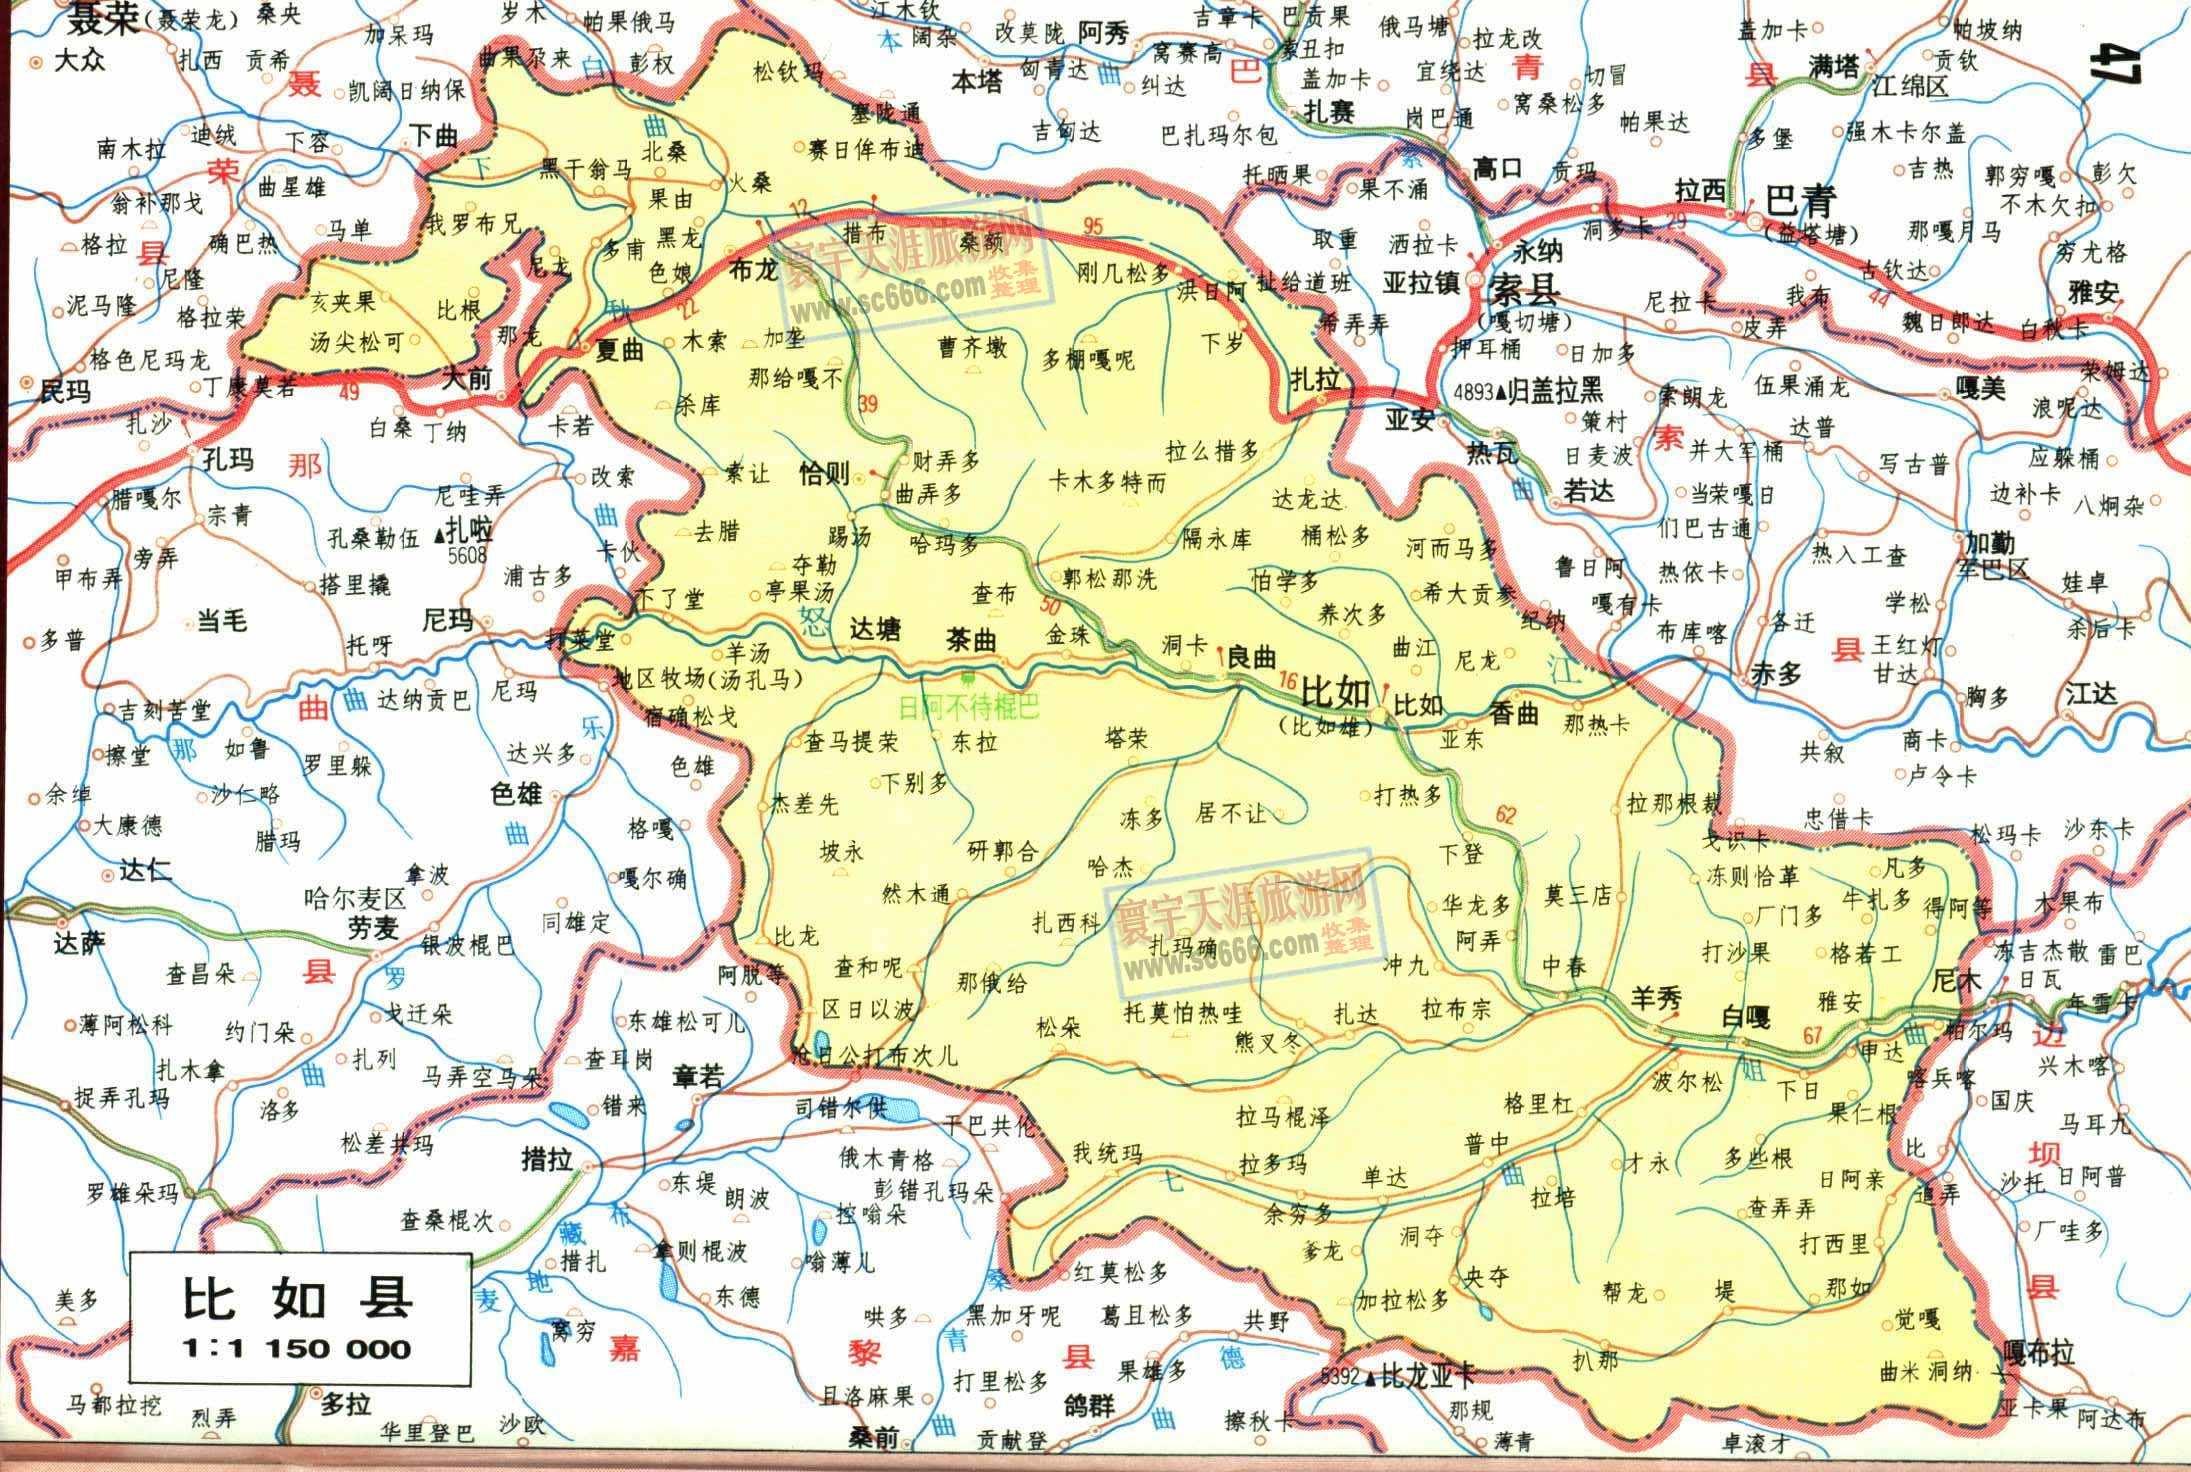 西藏尼木县地图|西藏尼木县地图全图高清版大图片|旅途风景图片网|www.visacits.com